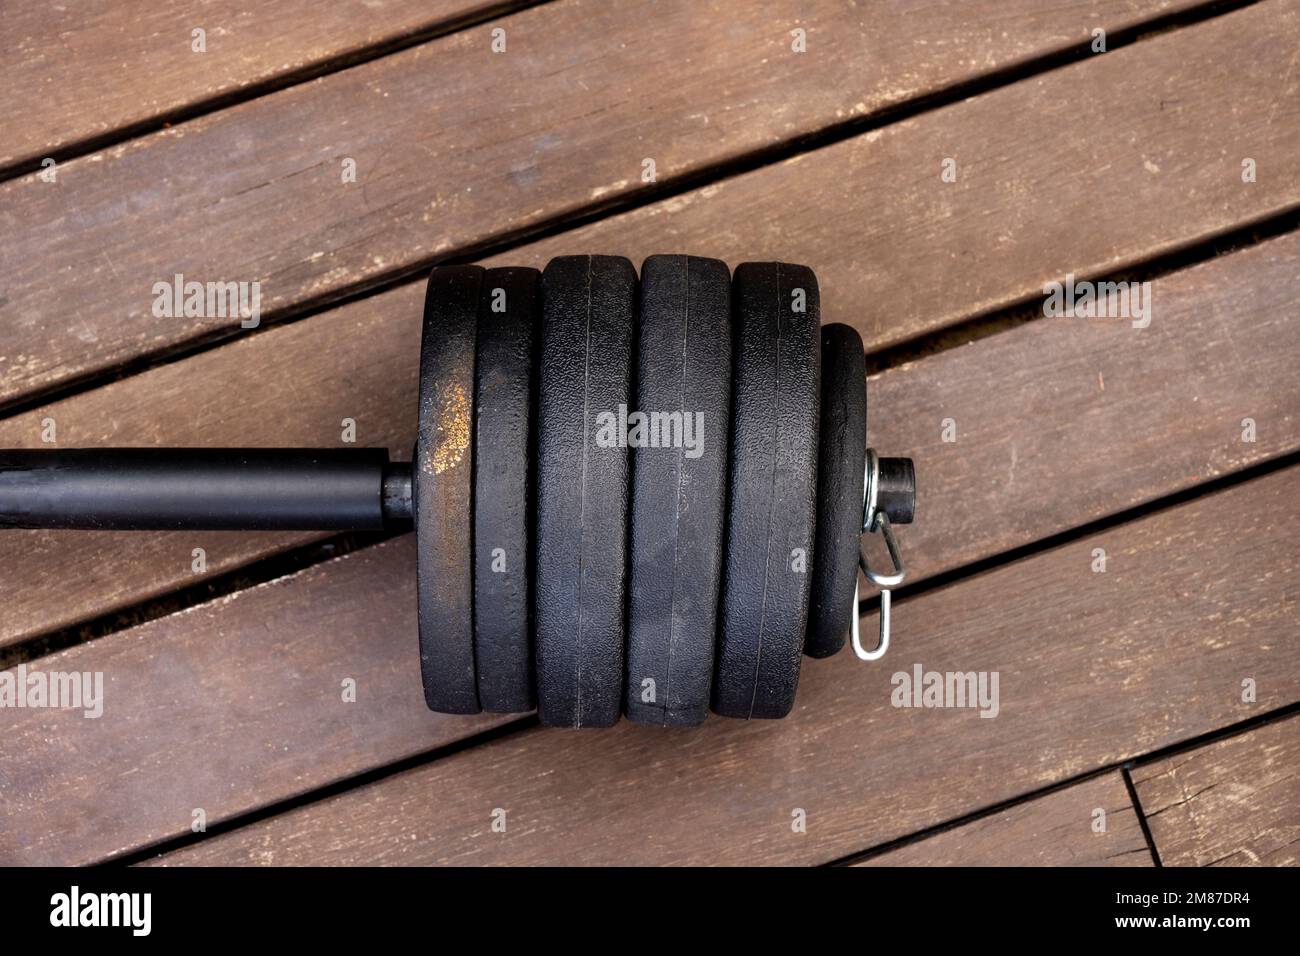 Ein Haufen Hantelgewichte aus einem Fitnessraum Stockfotografie - Alamy